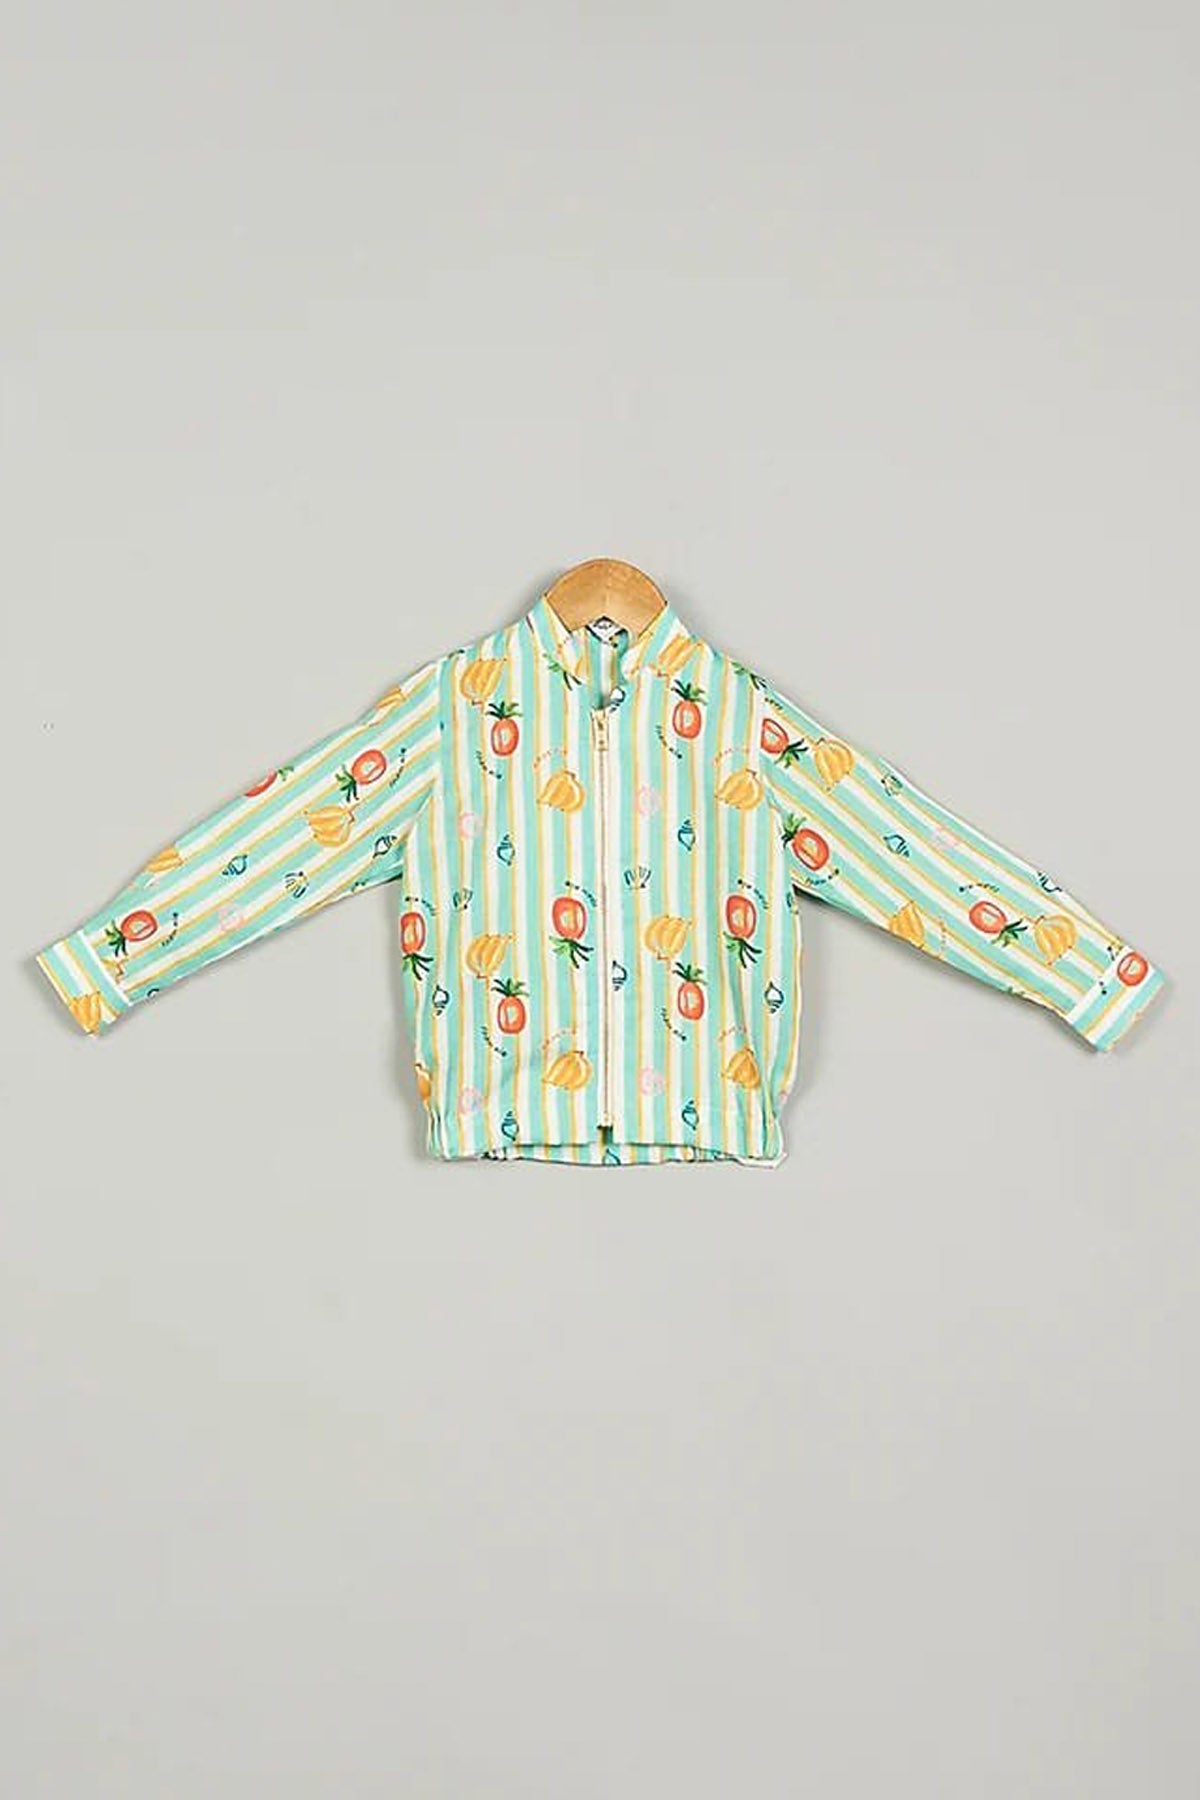 Designer Little Brats Digital Printed Jacket For Kids Available online at ScrollnShops